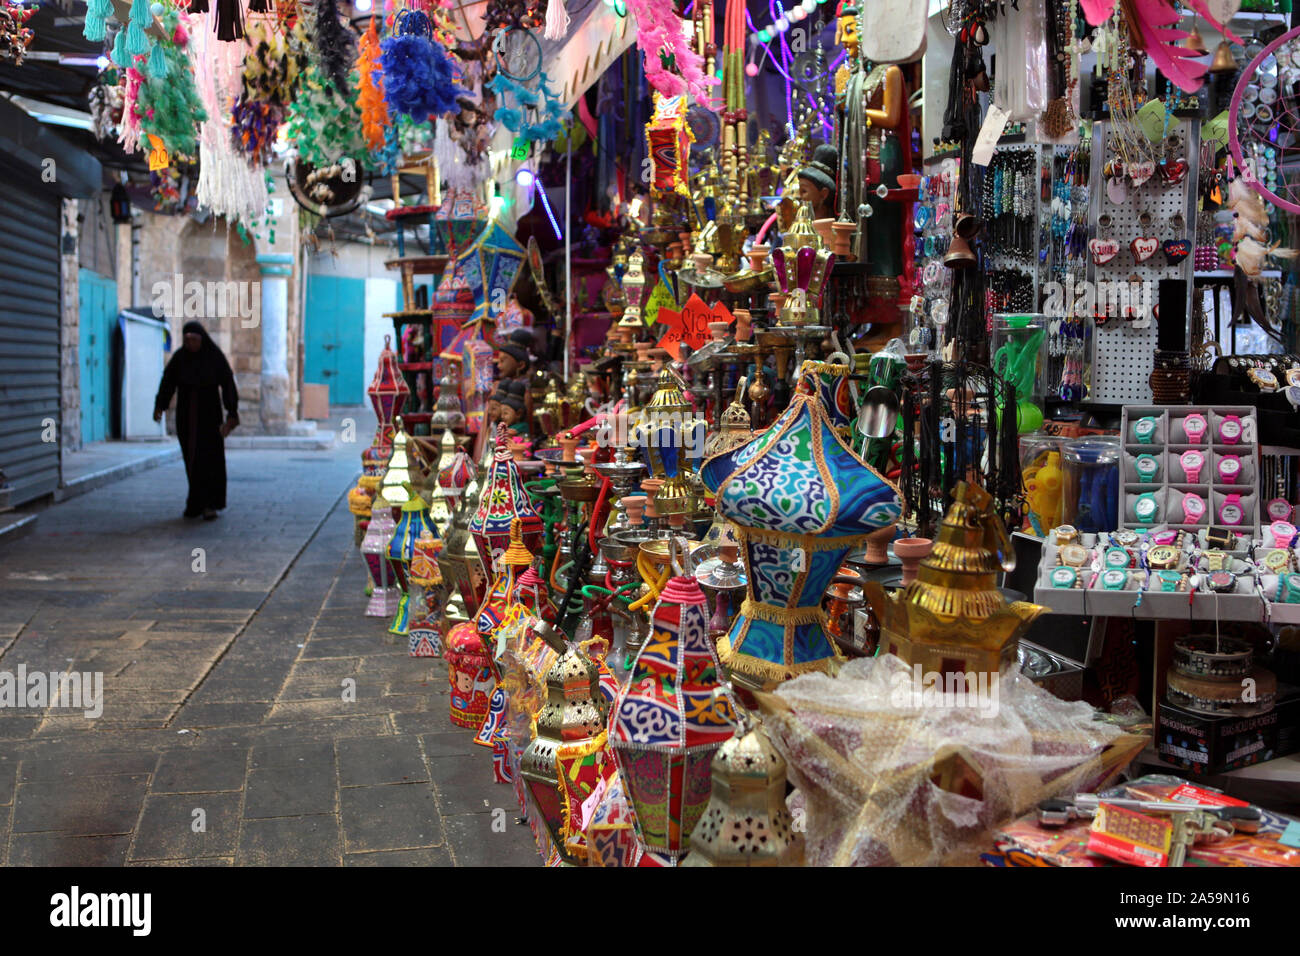 Akko, Israel - 3 Mai, 2019: Osten arabischen Markt der Altstadt von Akko Akko bietet eine Vielzahl an den Nahen Osten Produkte und traditionelle Souvenirs. Osten Arabisch Stockfoto